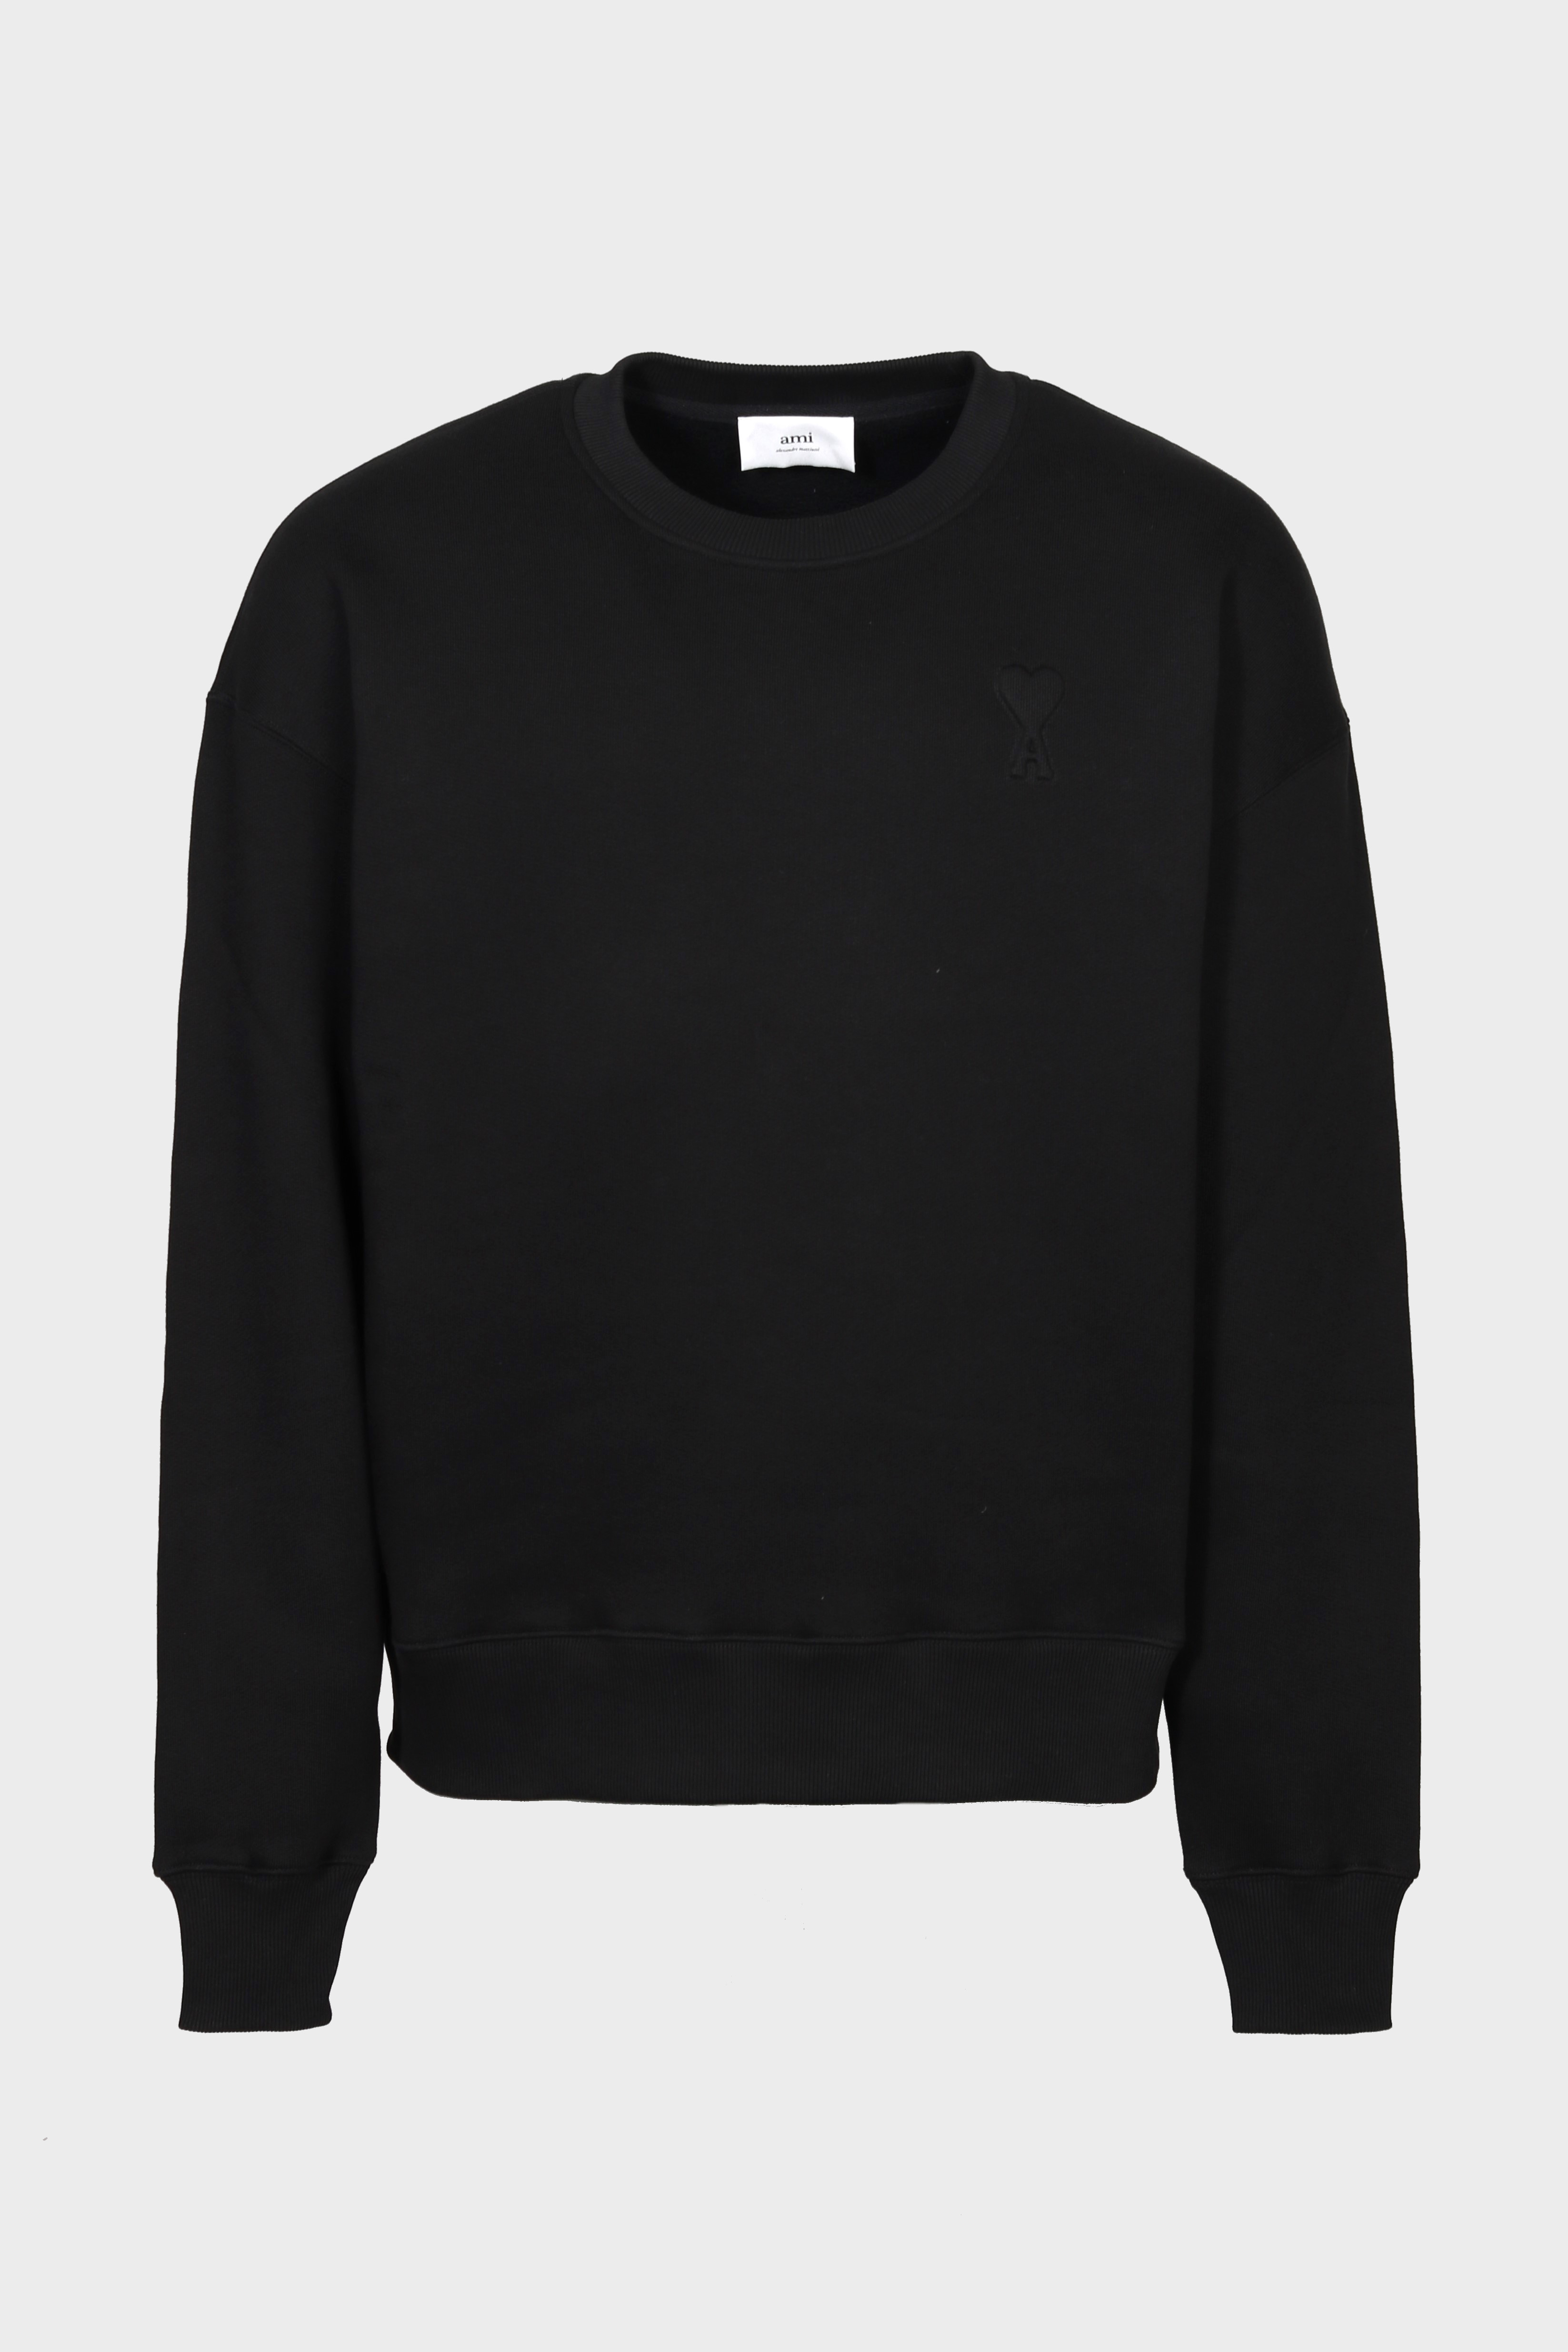 AMI PARIS de Coeur Embossed Sweatshirt in Black M